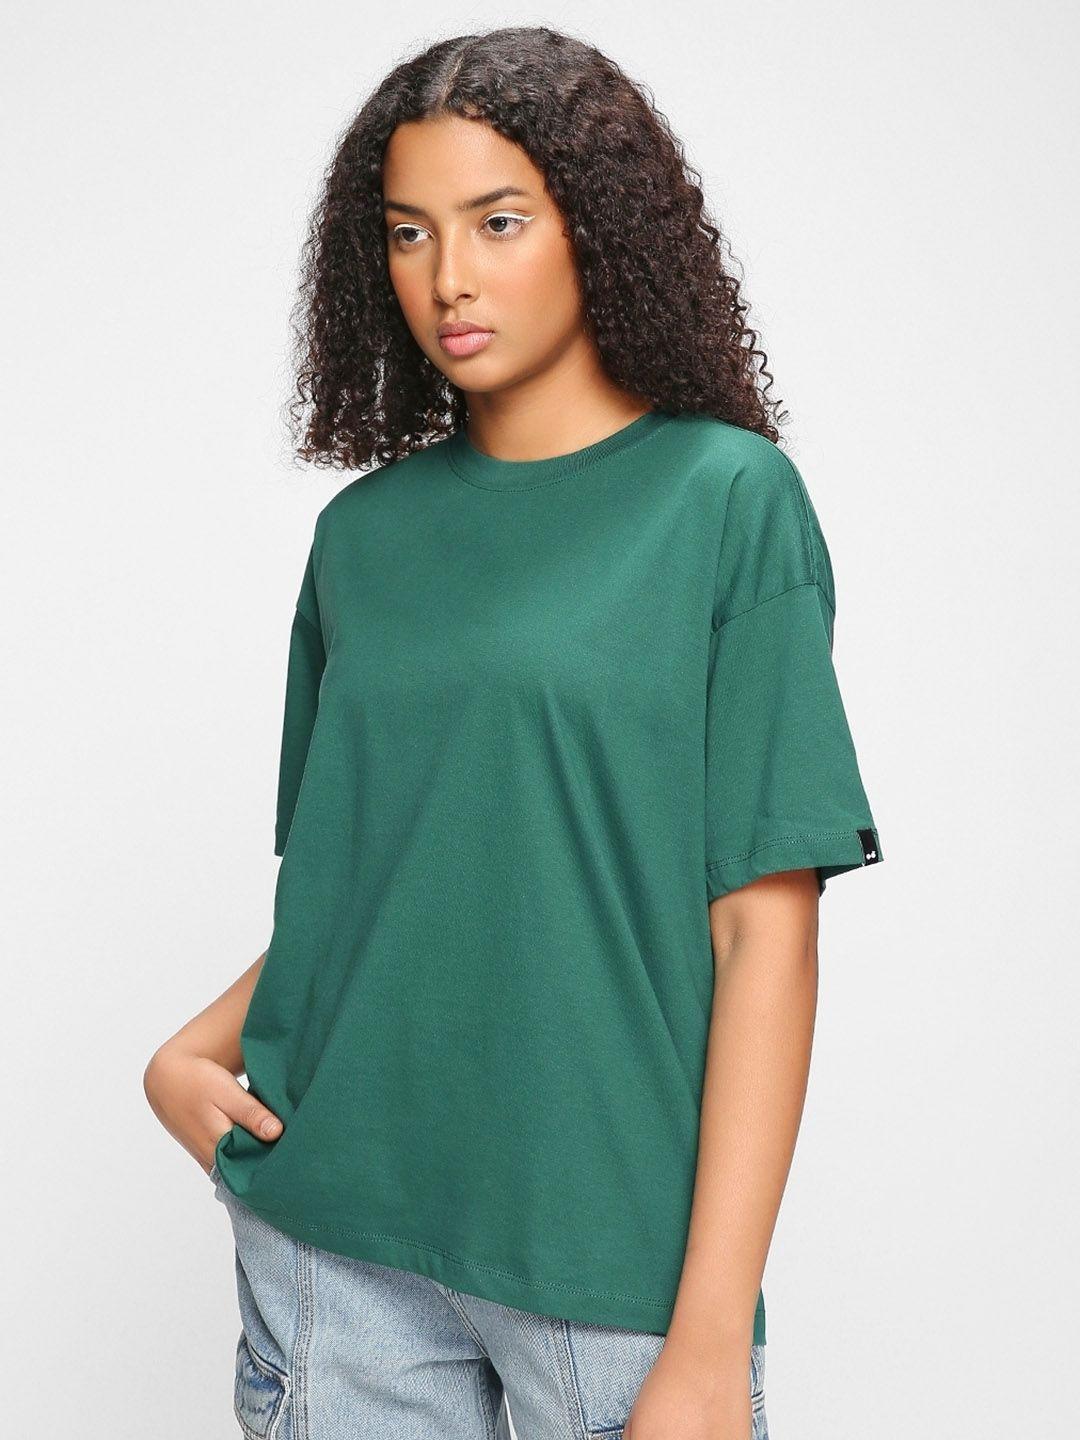 bewakoof-women-green-drop-shoulder-sleeves-cottont-shirt